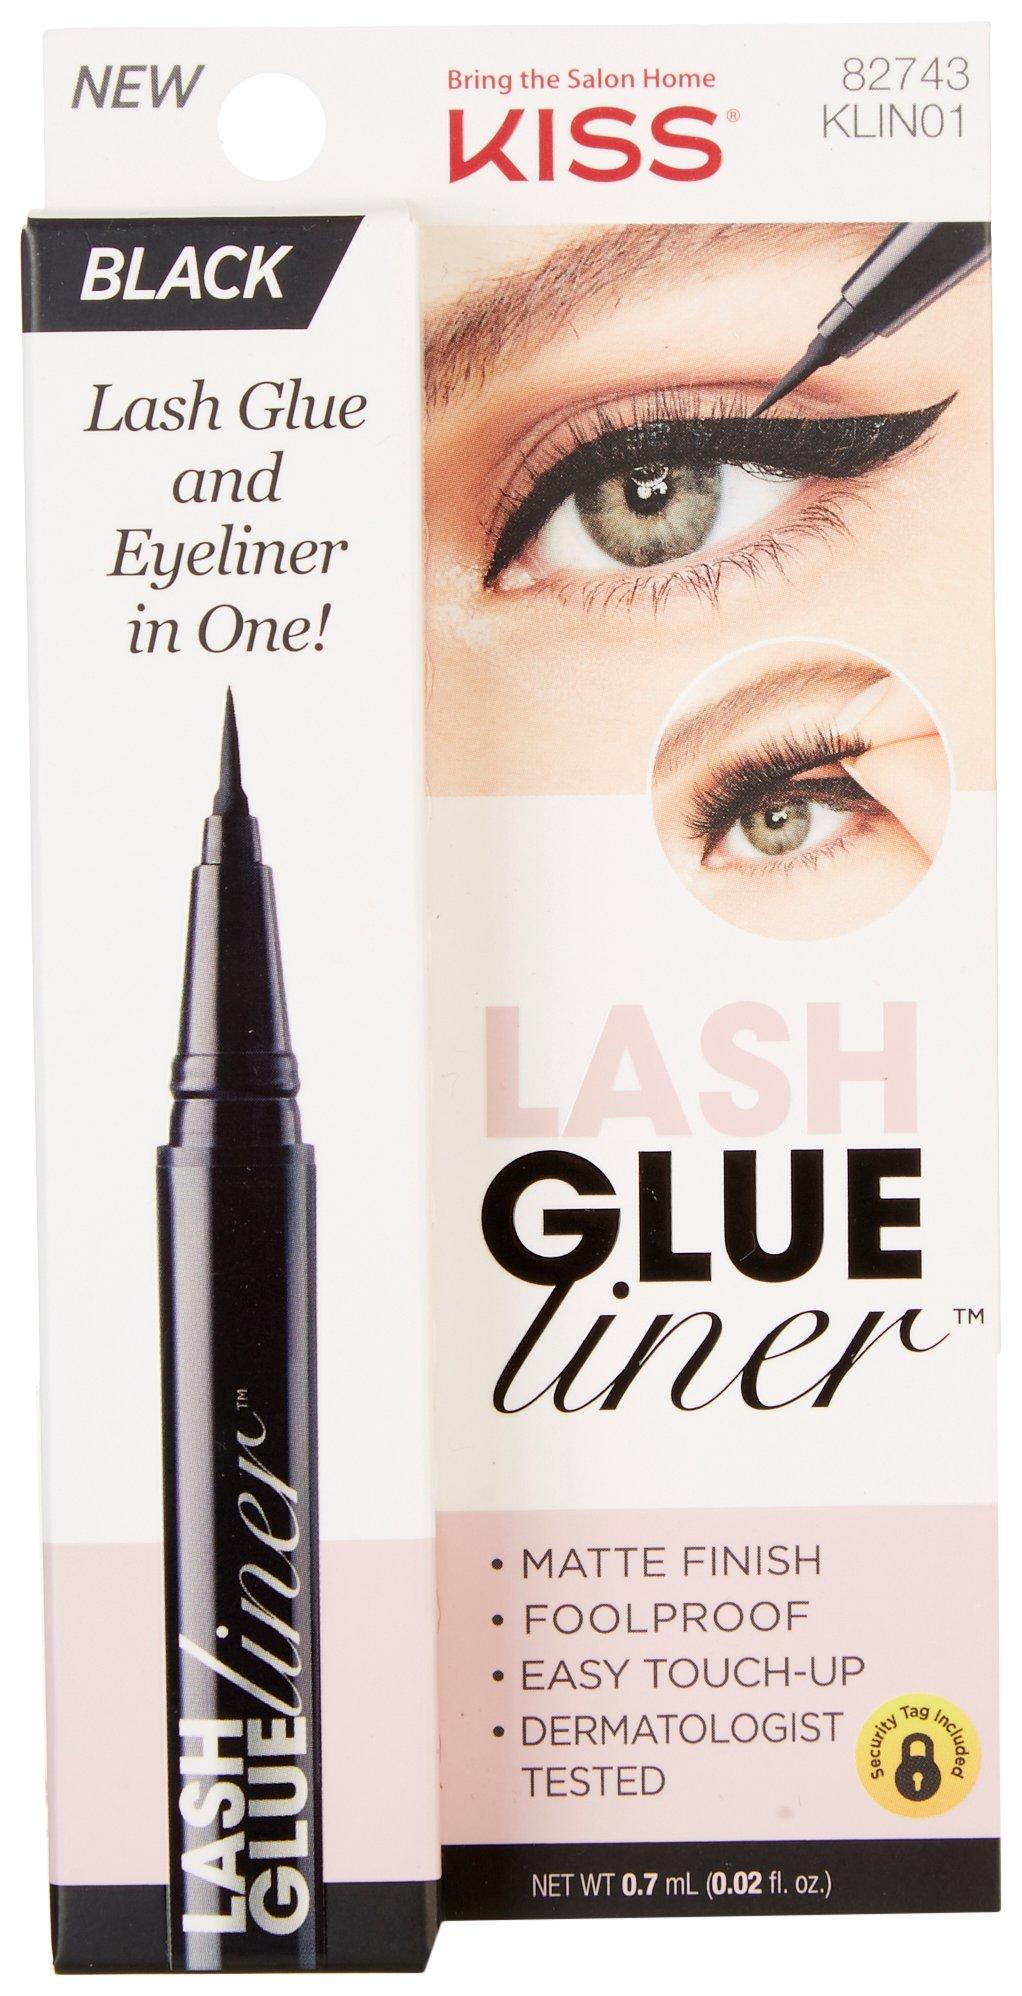 Black Matte Finish Lash Glue & Eyeliner .02 fl. oz.